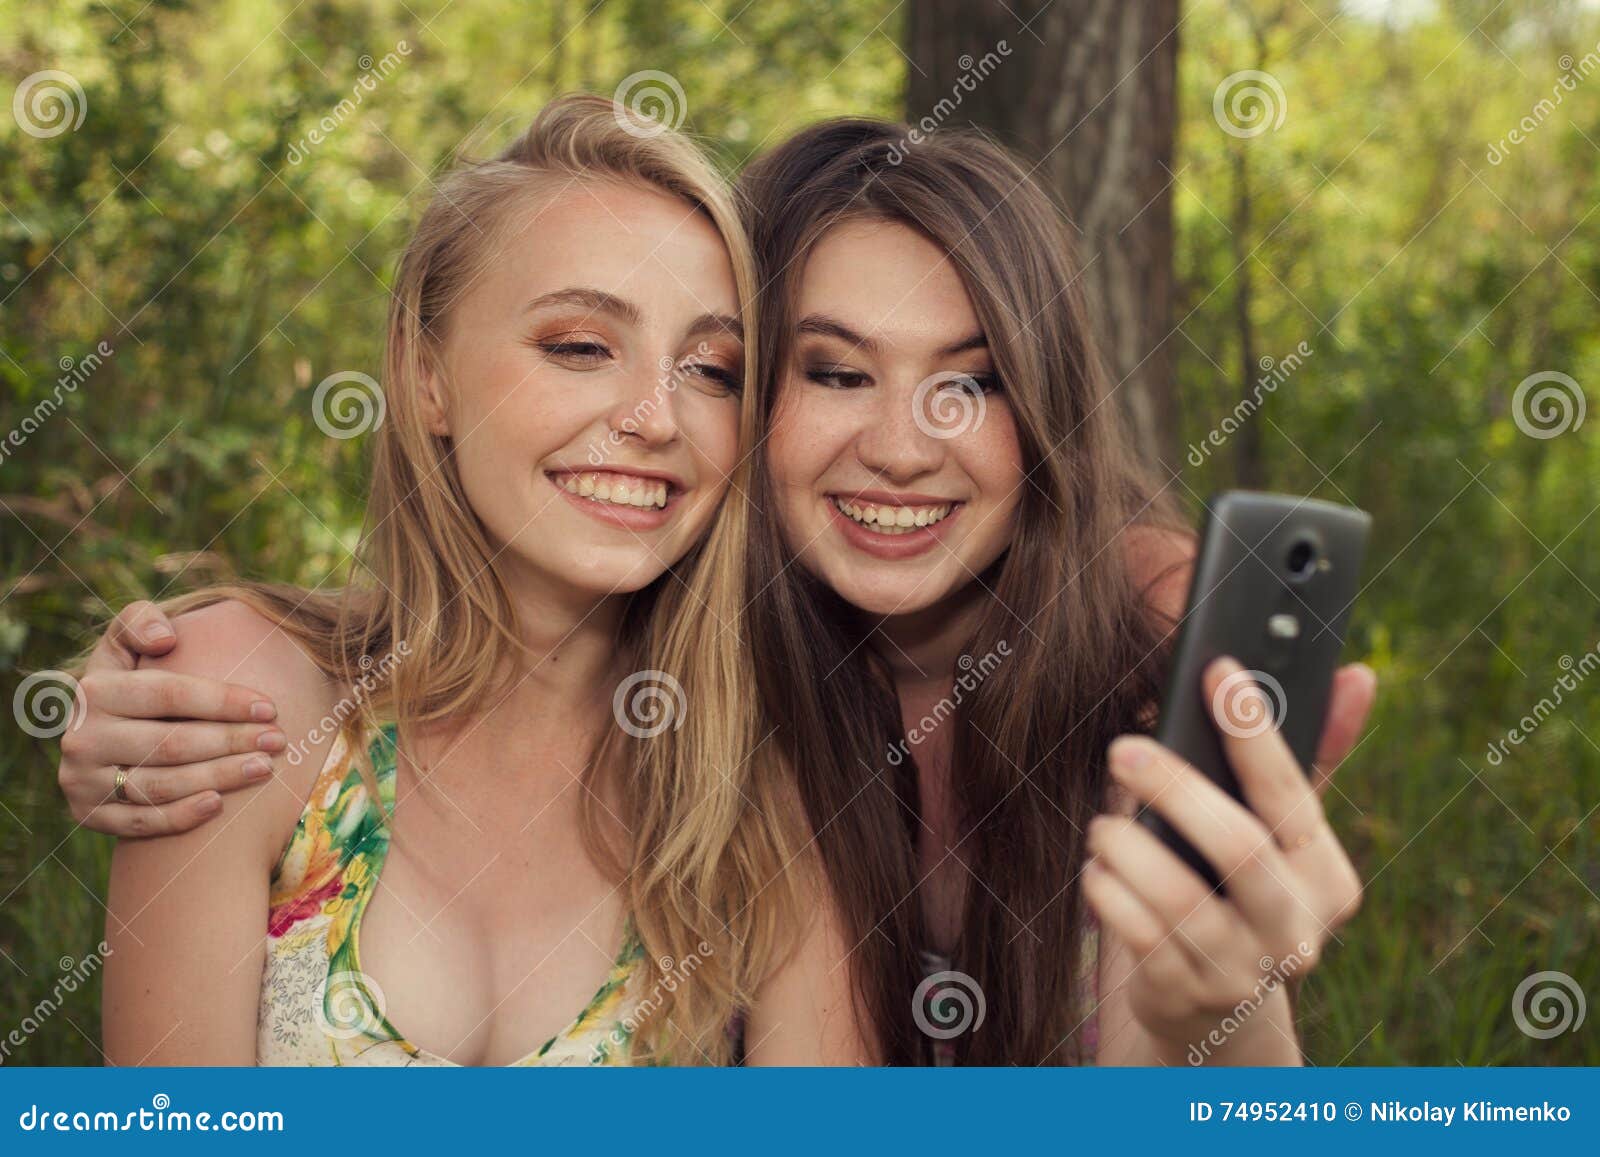 teen girls selfshot pics